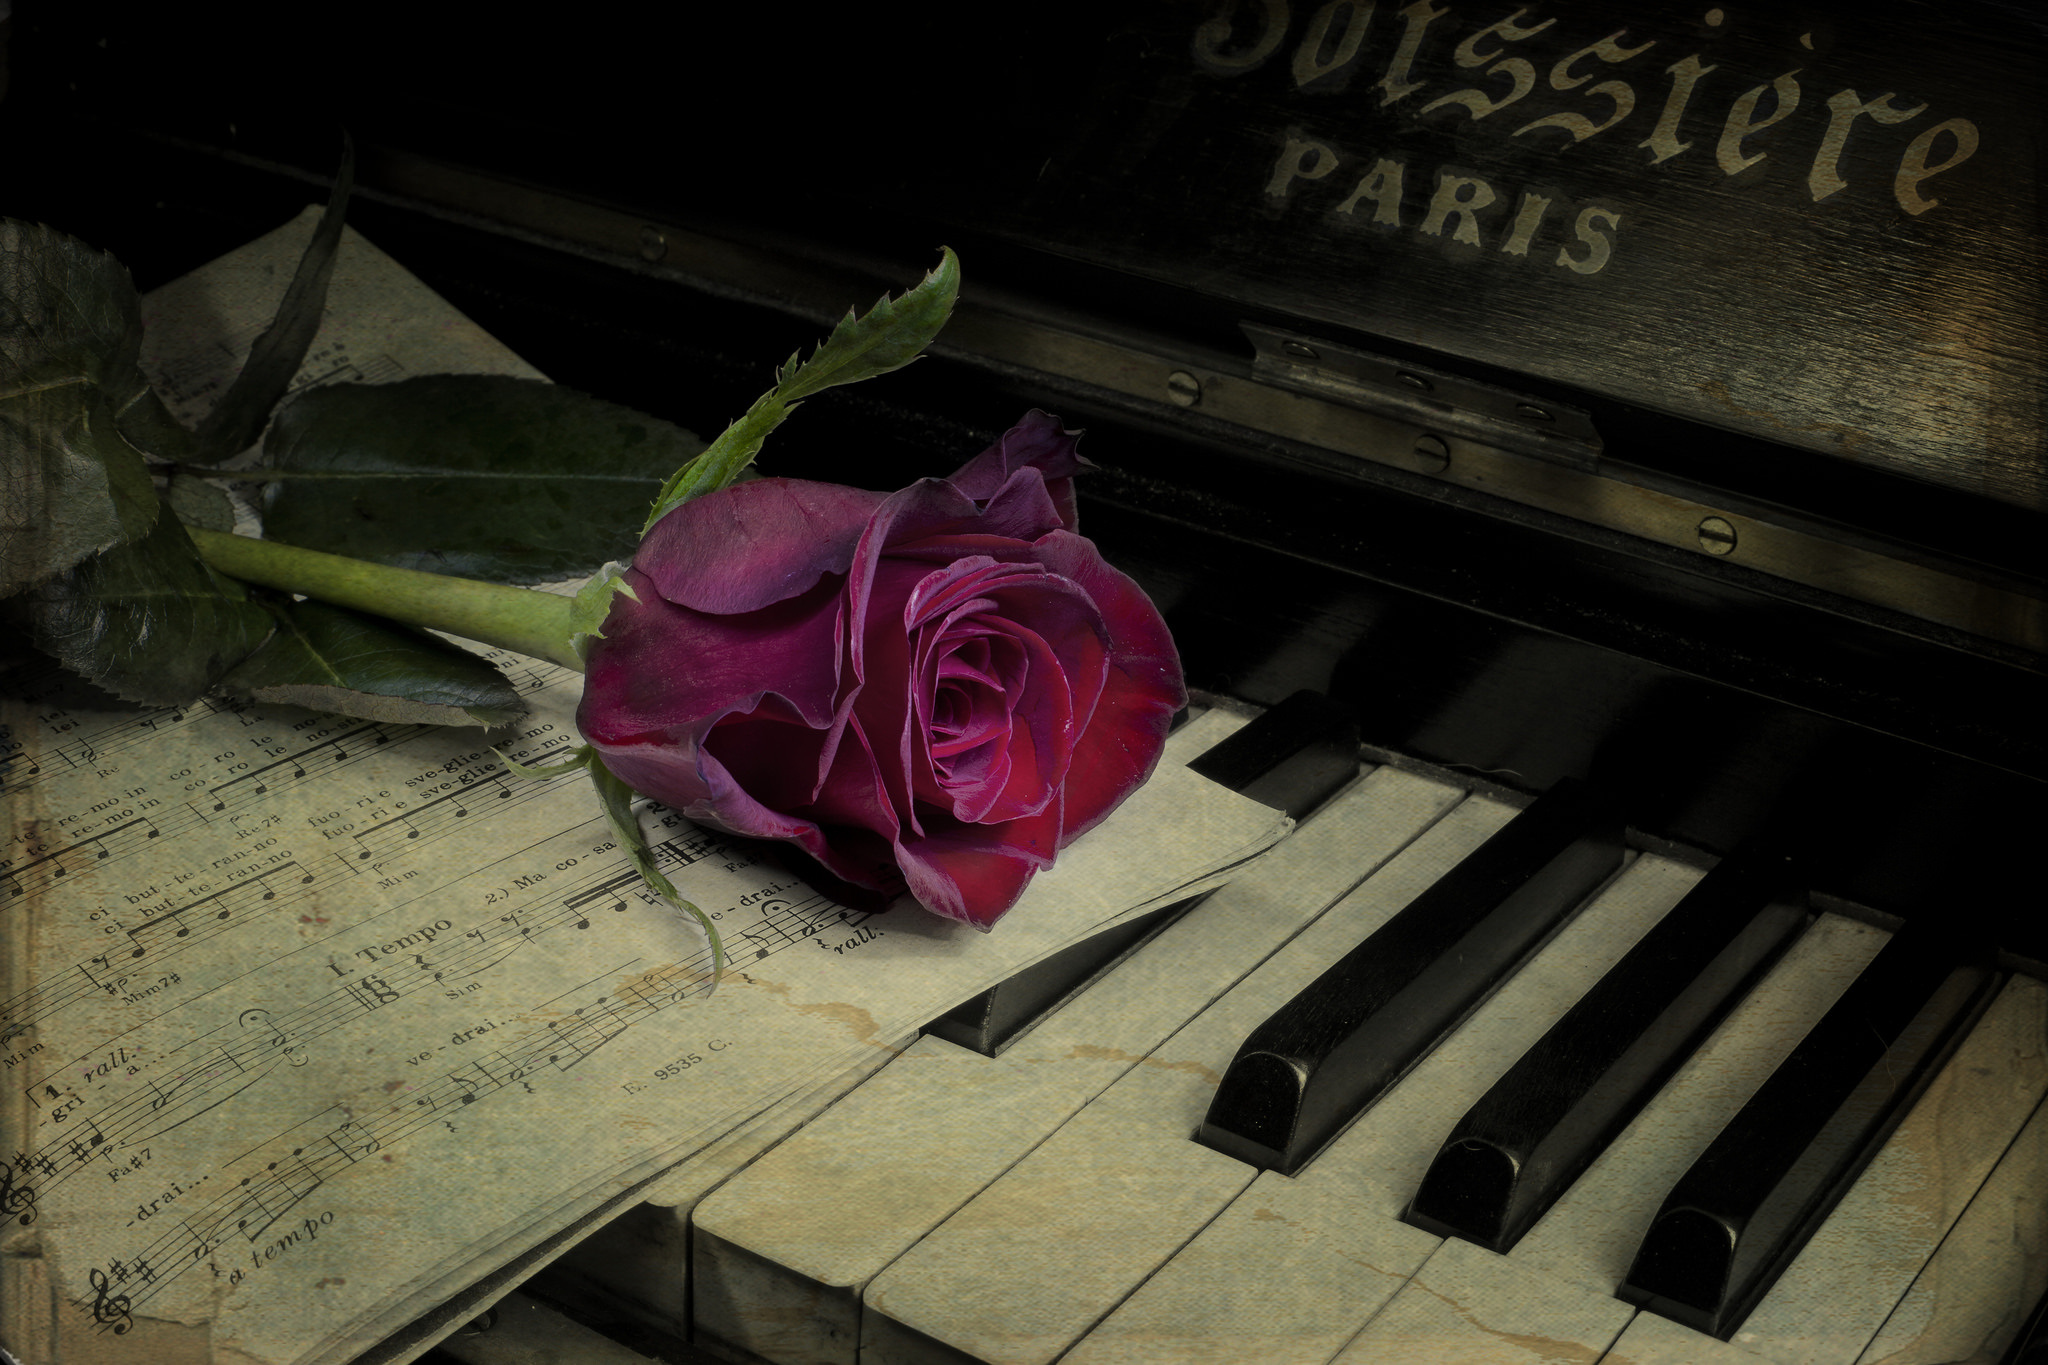 Хорошая грустная музыка. Цветы на пианино. Пианино с цветами. Пианино на рабочий стол. Цветы на рояле.